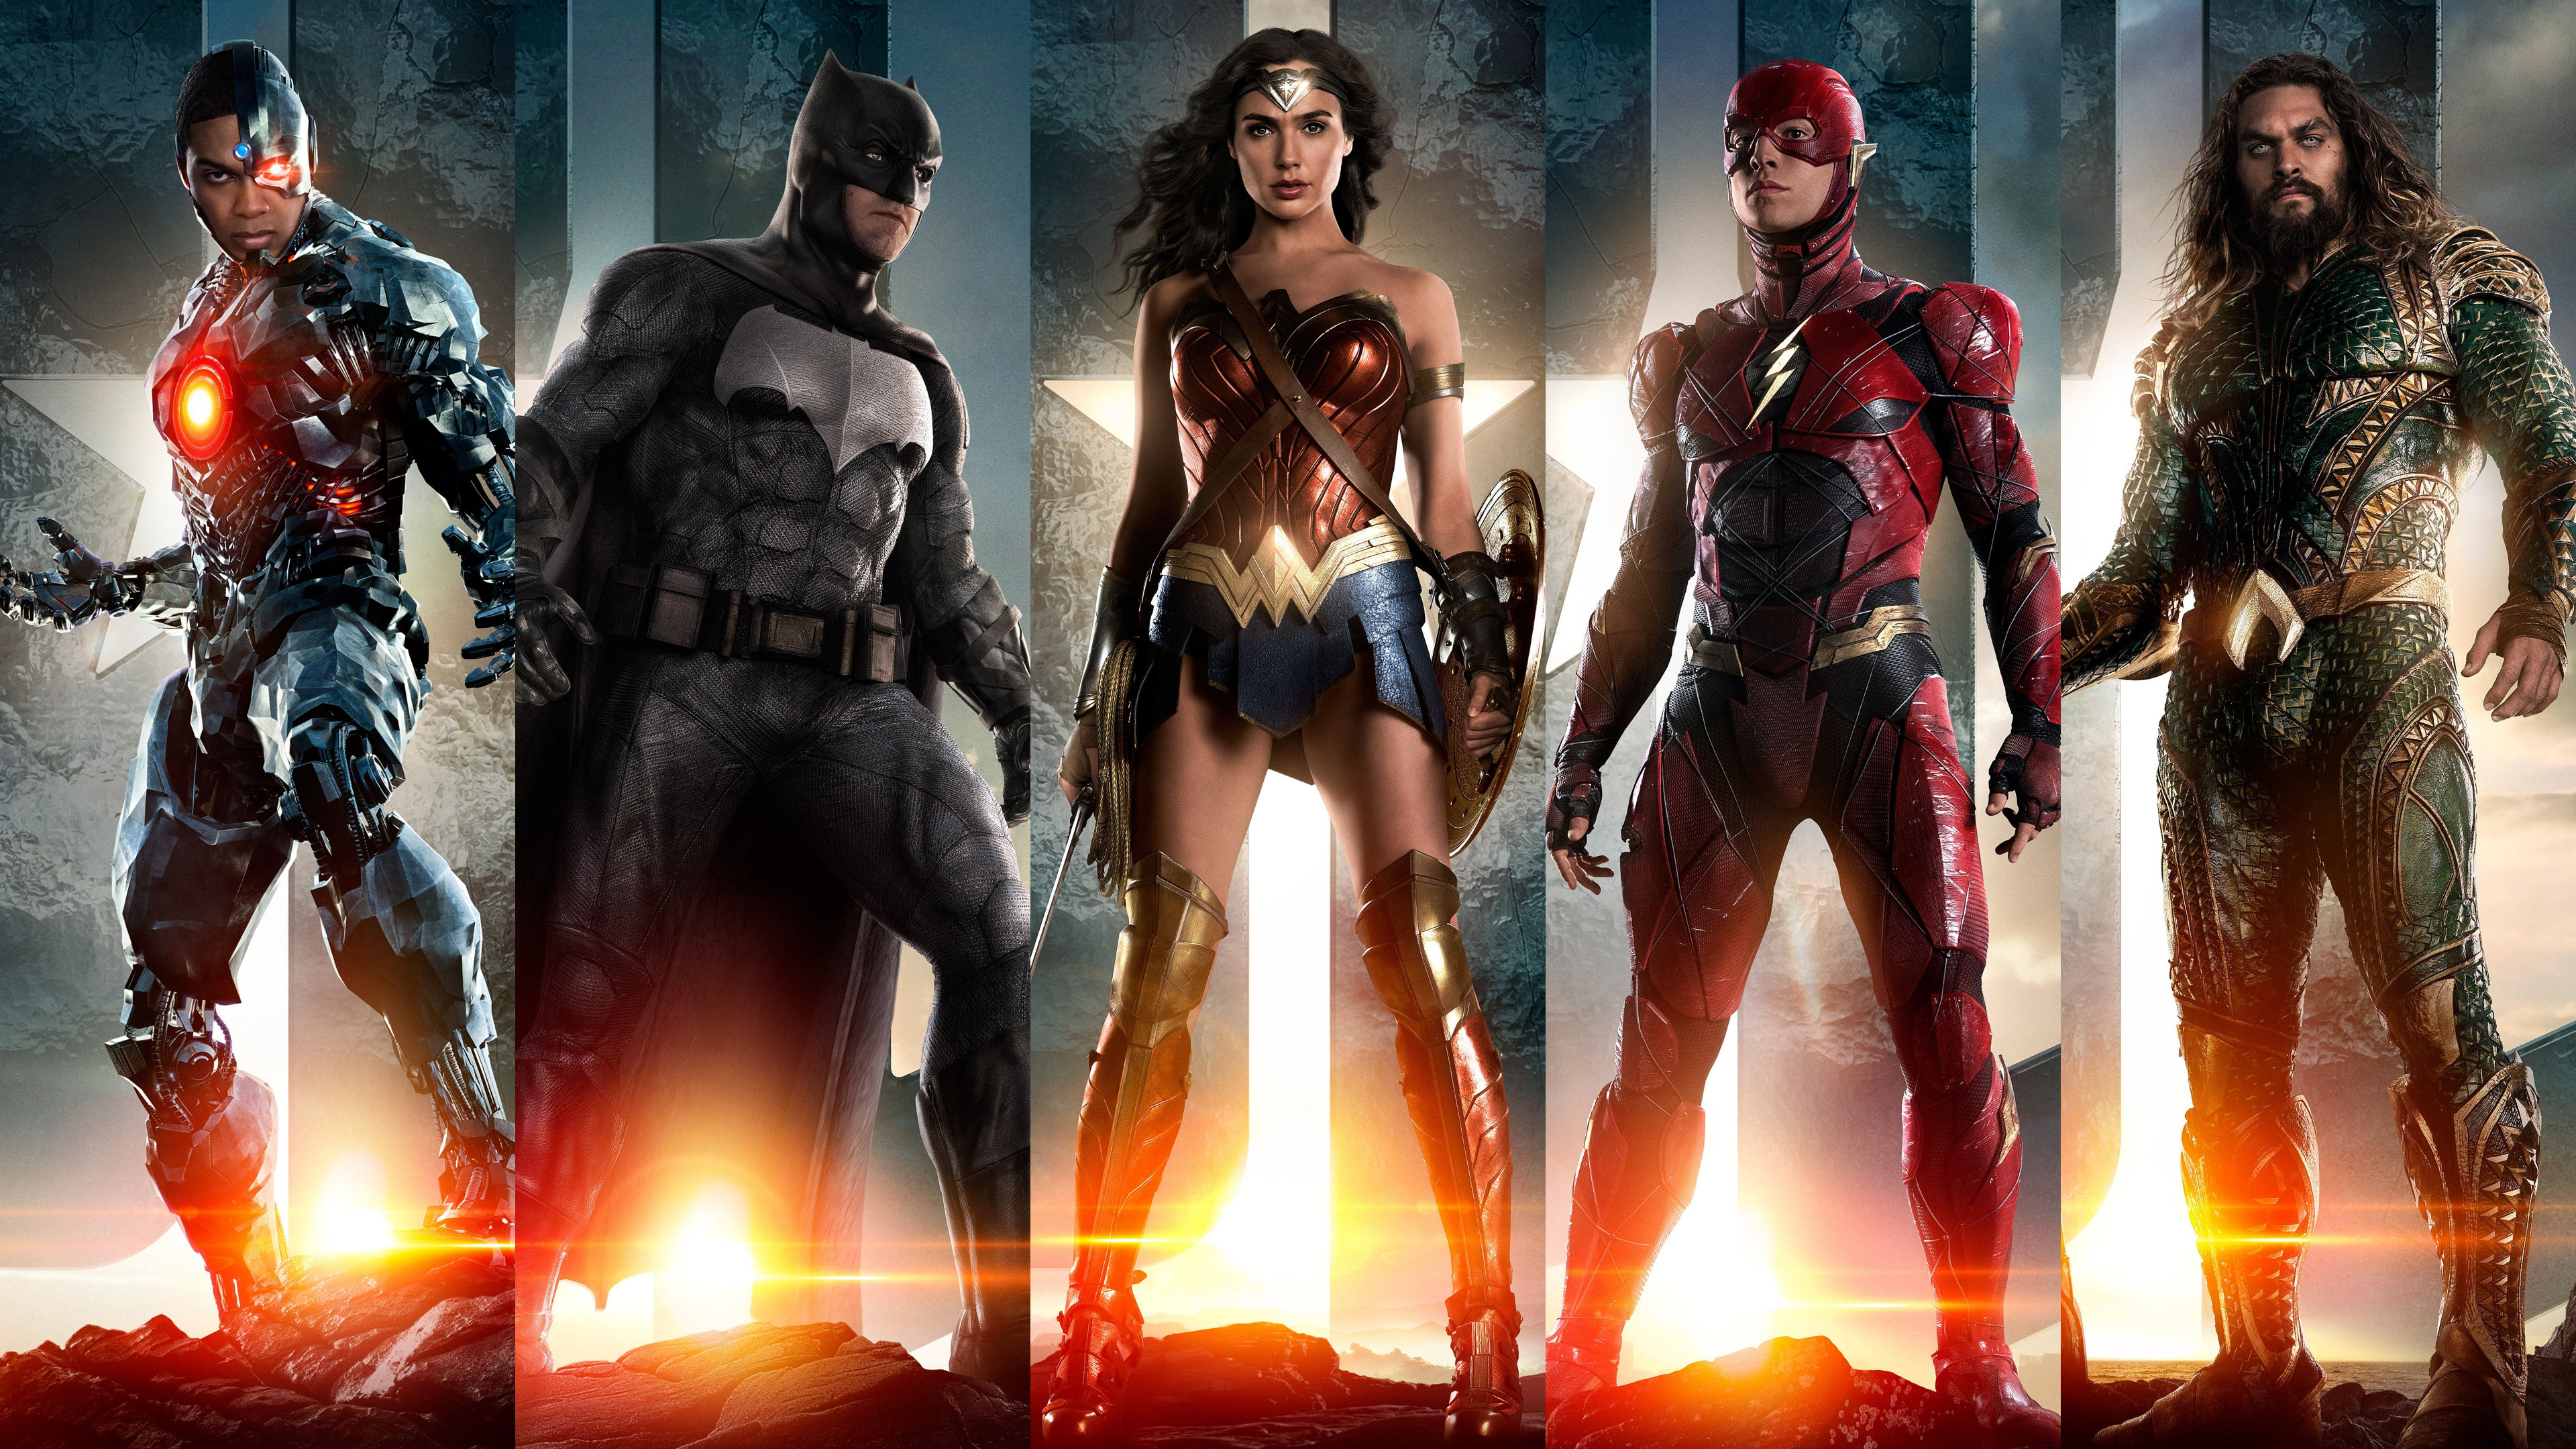 正义联盟, 蝙蝠侠, Dc漫画, 超级英雄, 动作片 壁纸 3840x2160 允许